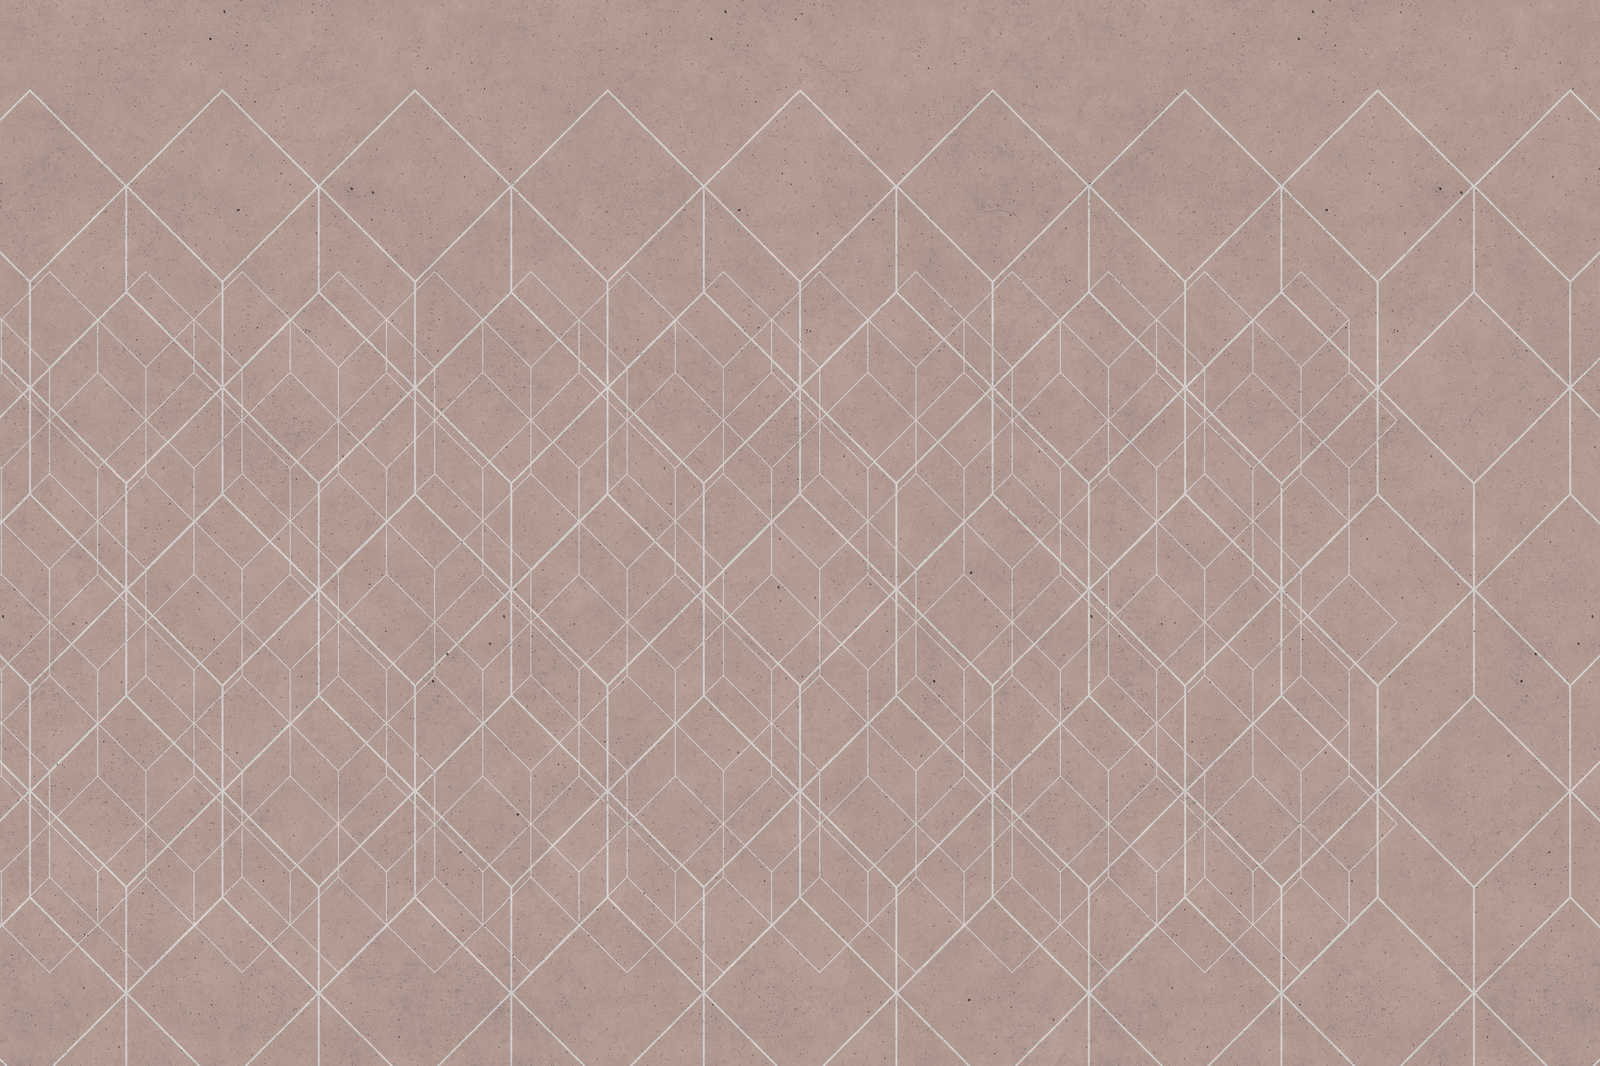             Leinwandbild geometrisches Muster | beige, weiß – 1,20 m x 0,80 m
        